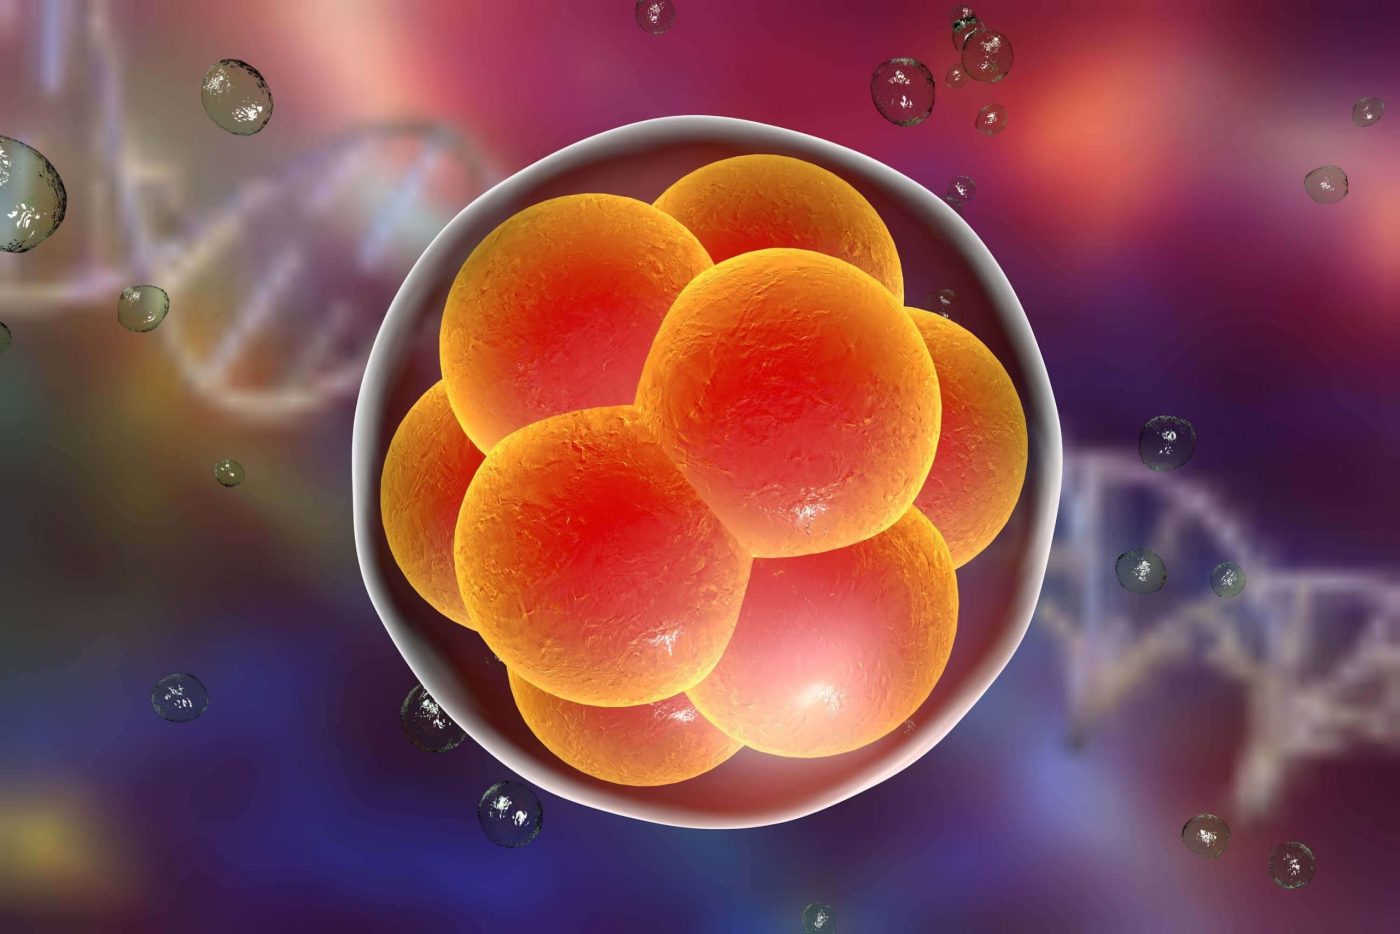 Biopsia de embriões: quando é necessário realizar?